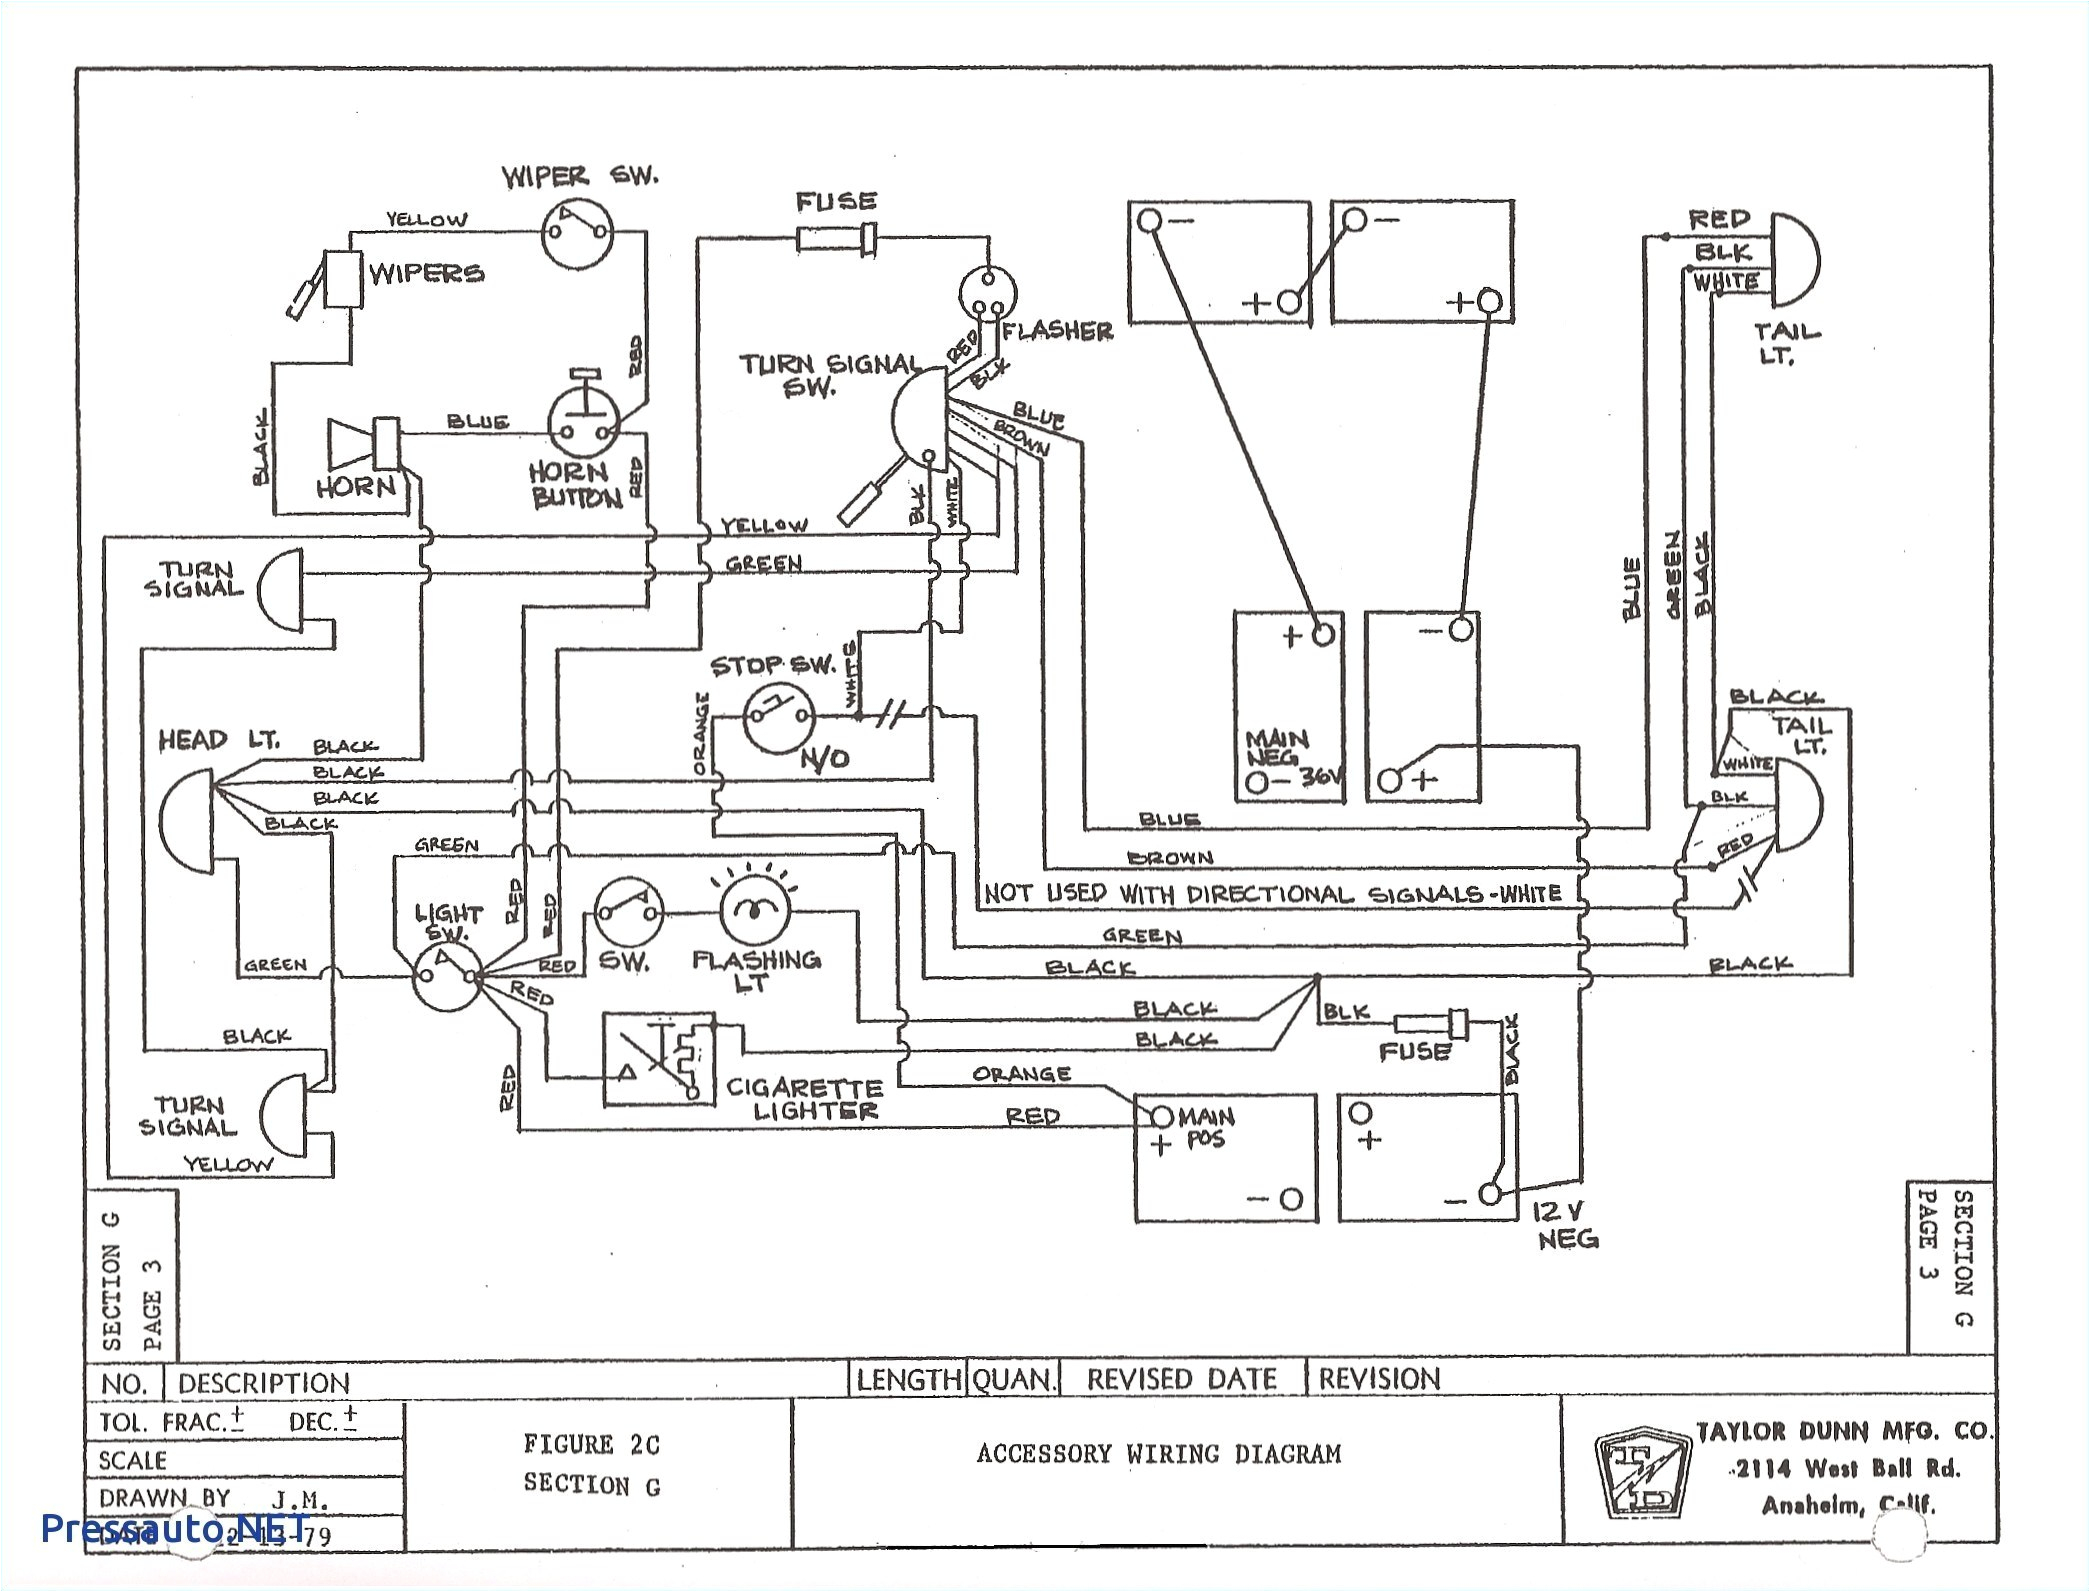 2006 club car wiring diagram wiring diagram wire diagram for 36 volt 2000 club car caroldoey source golf cart battery